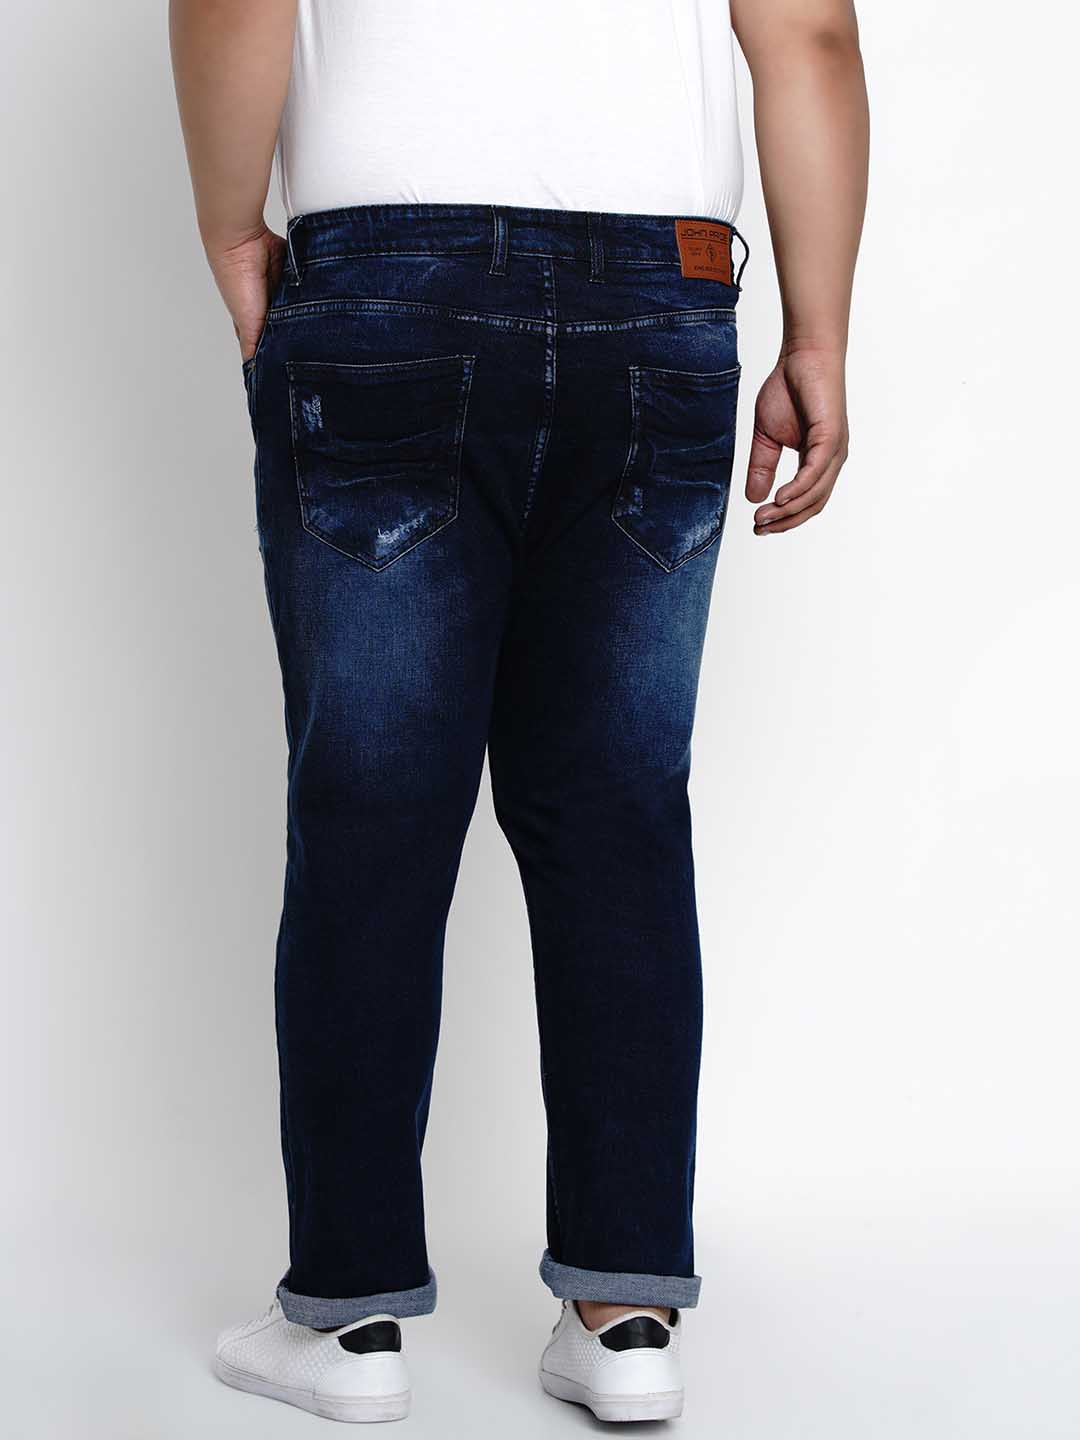 bottomwear/jeans/BEPLJPJ1270/bepljpj1270-5.jpg